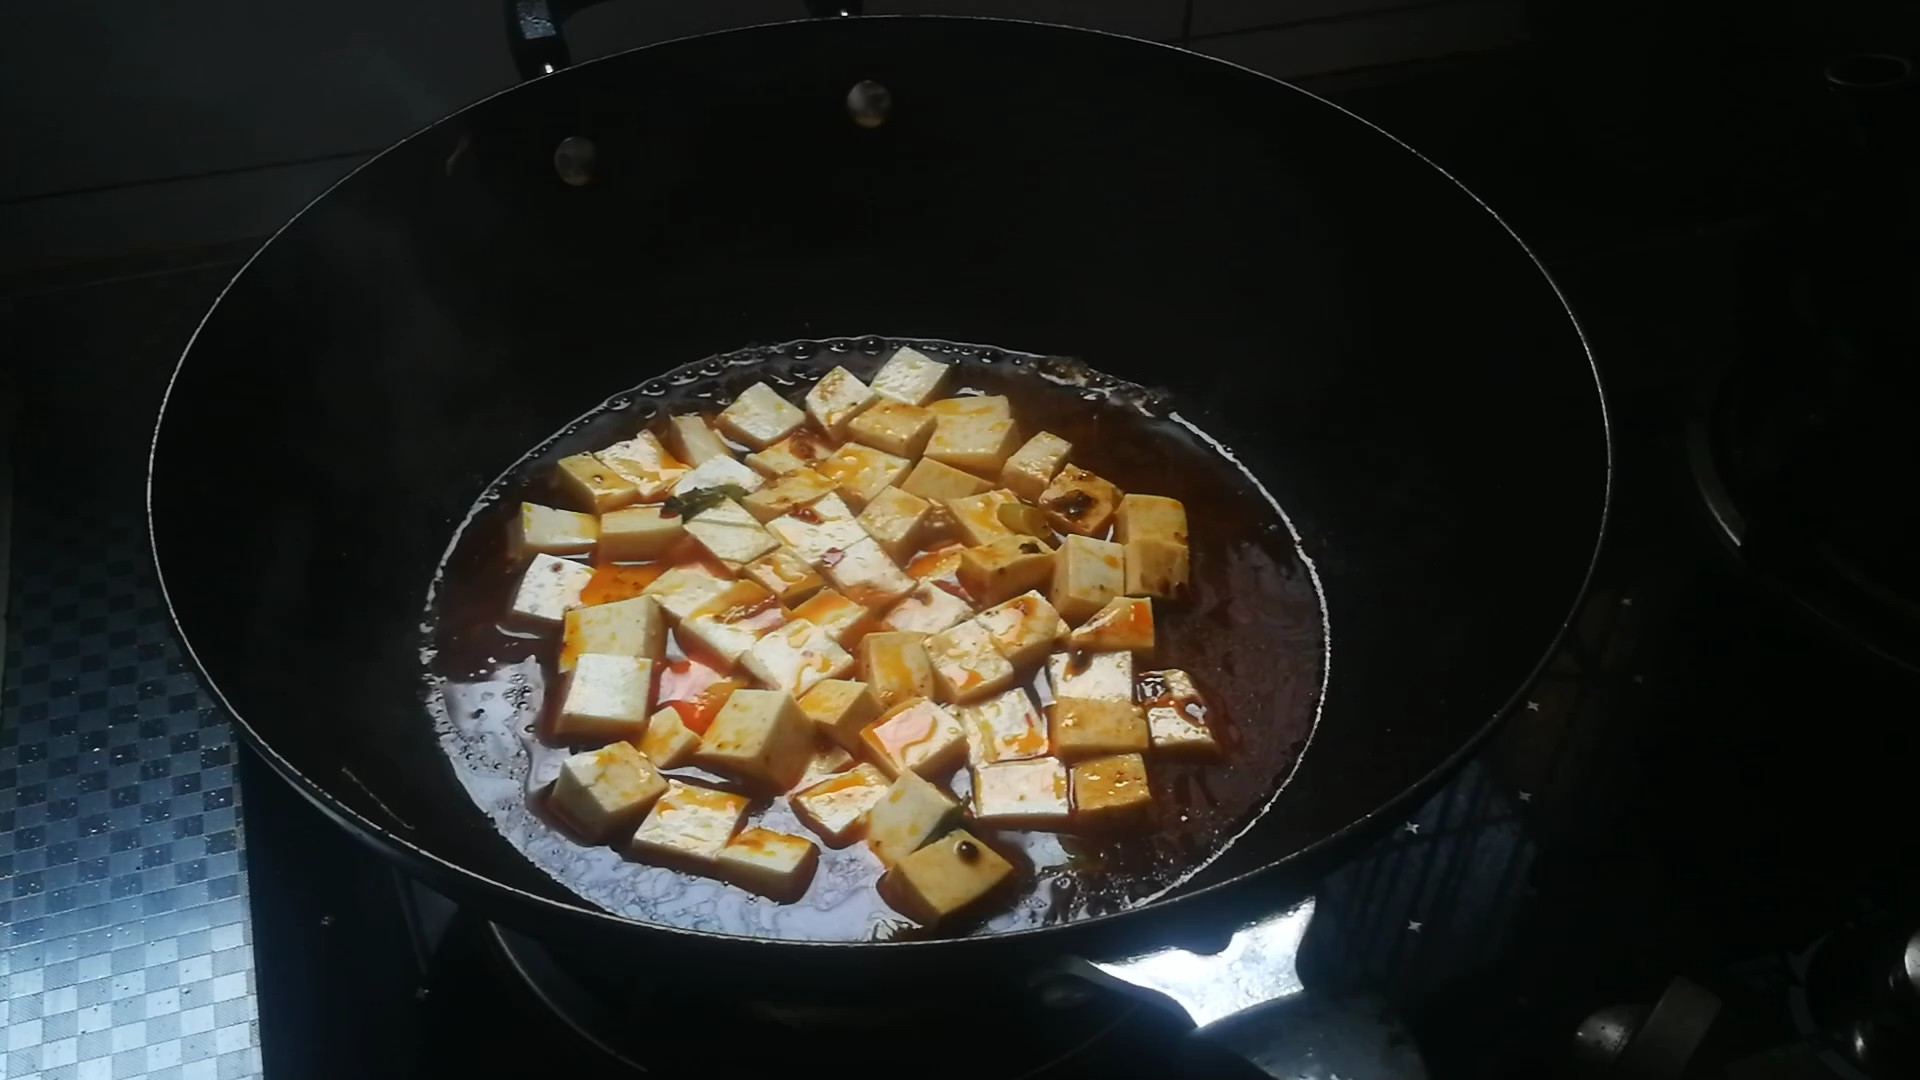 Spicy Beef Braised Tofu recipe